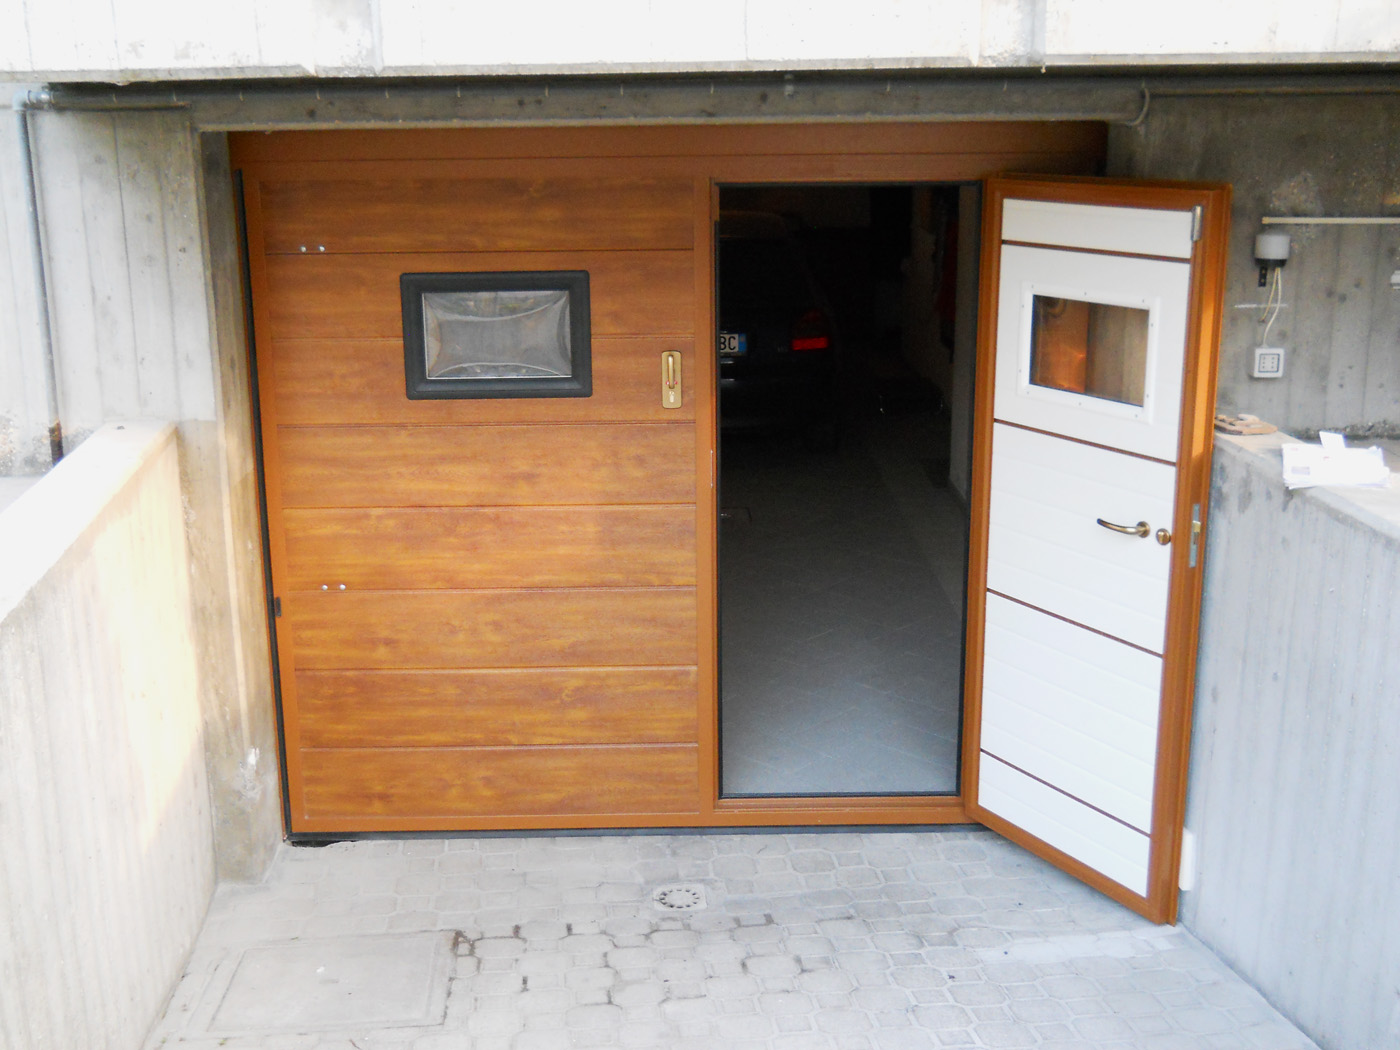 basculante pannelli finto legno chiaro, porta pedonale, 2 oblo - Edilbox- Forlì Cesena - Rimini - Faenza - Ravenna - Imola